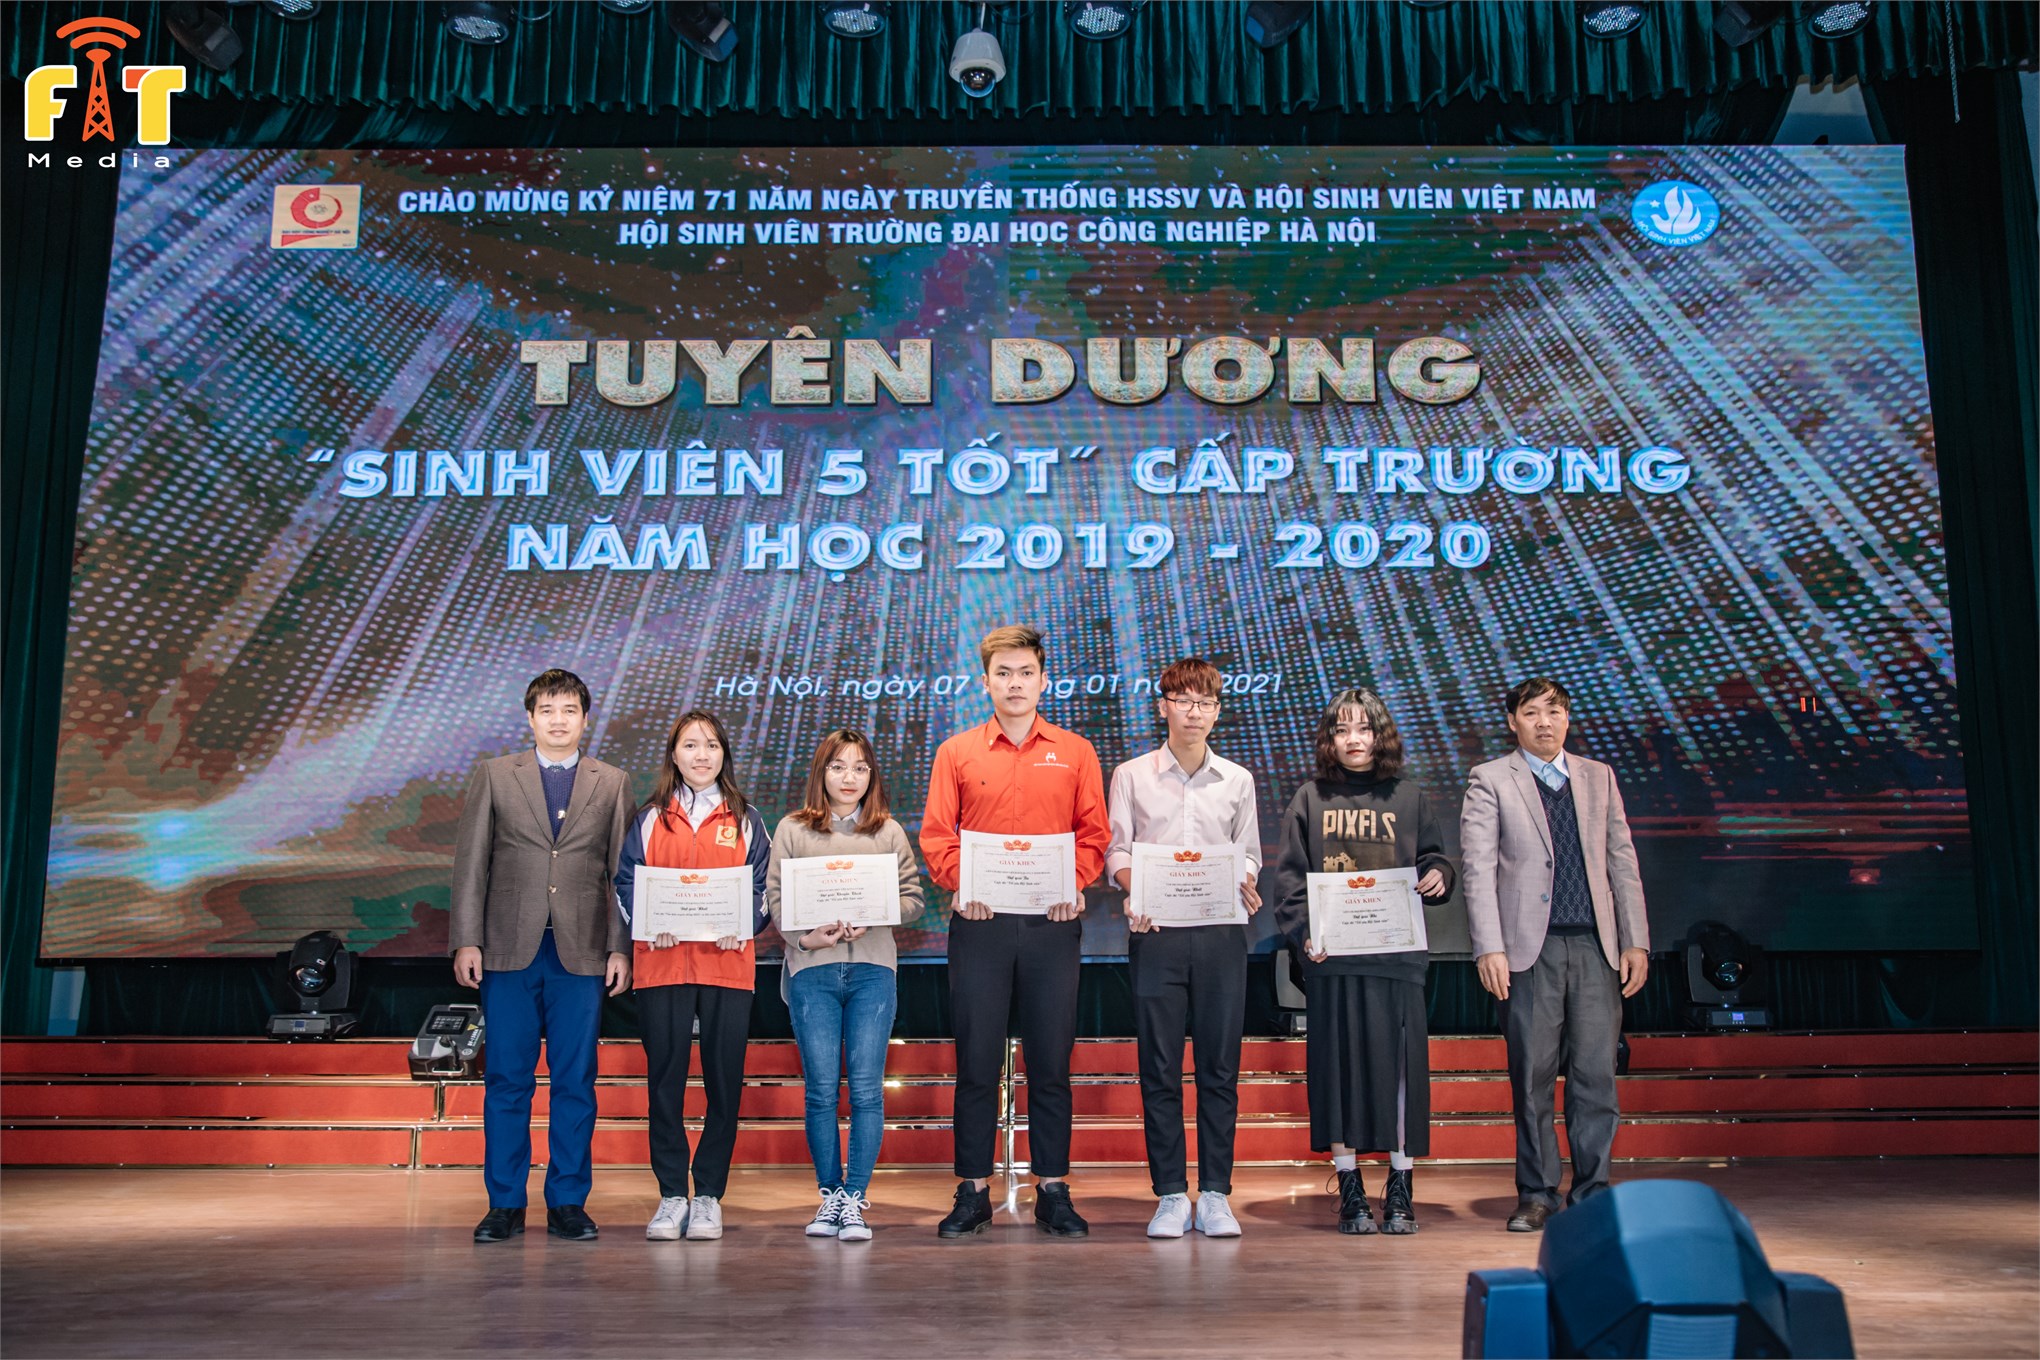 Kỷ niệm 71 năm Ngày truyền thống học sinh sinh viên và Hội Sinh viên Việt Nam (09/01/1950 - 09/01/2021) và tuyên dương “Sinh viên 5 tốt” cấp trường năm học 2019 - 2020